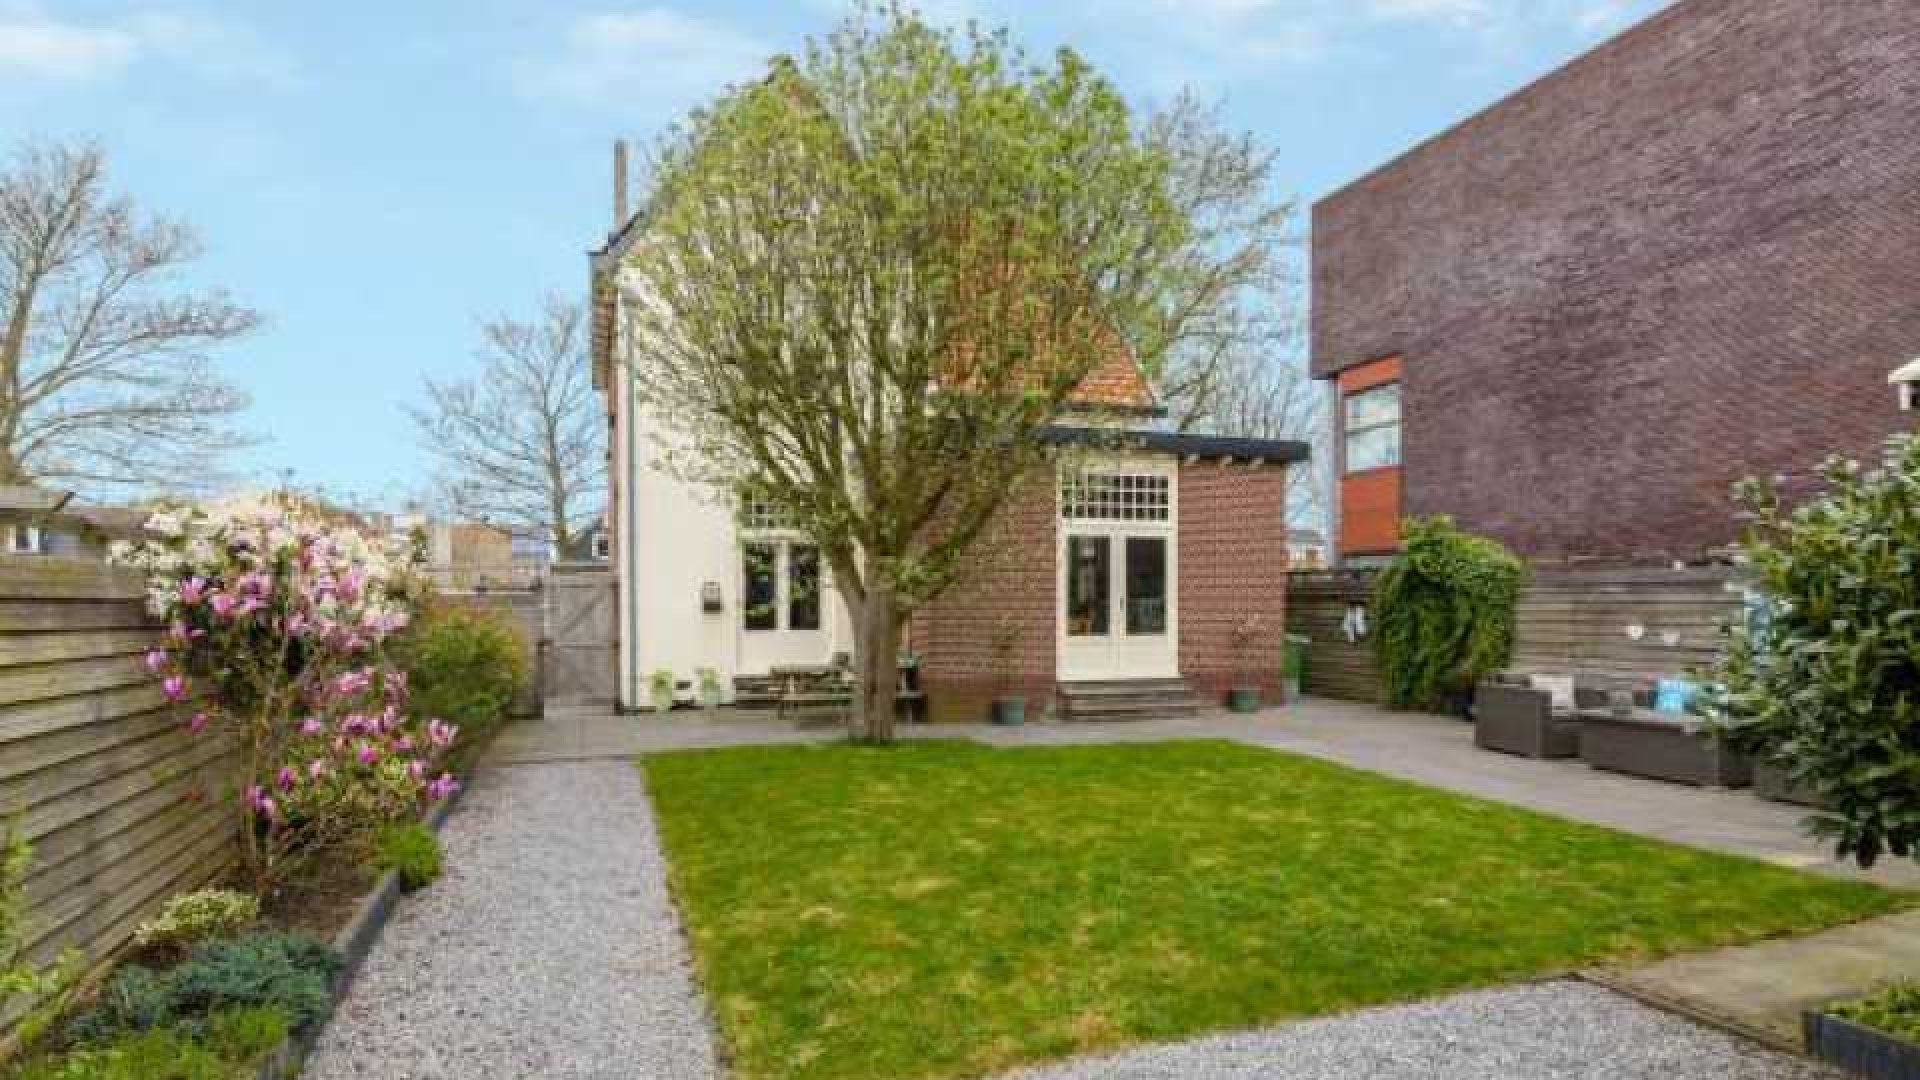 Marcel van Roosmalen levert in op verkoop van zijn huis! Zie foto's